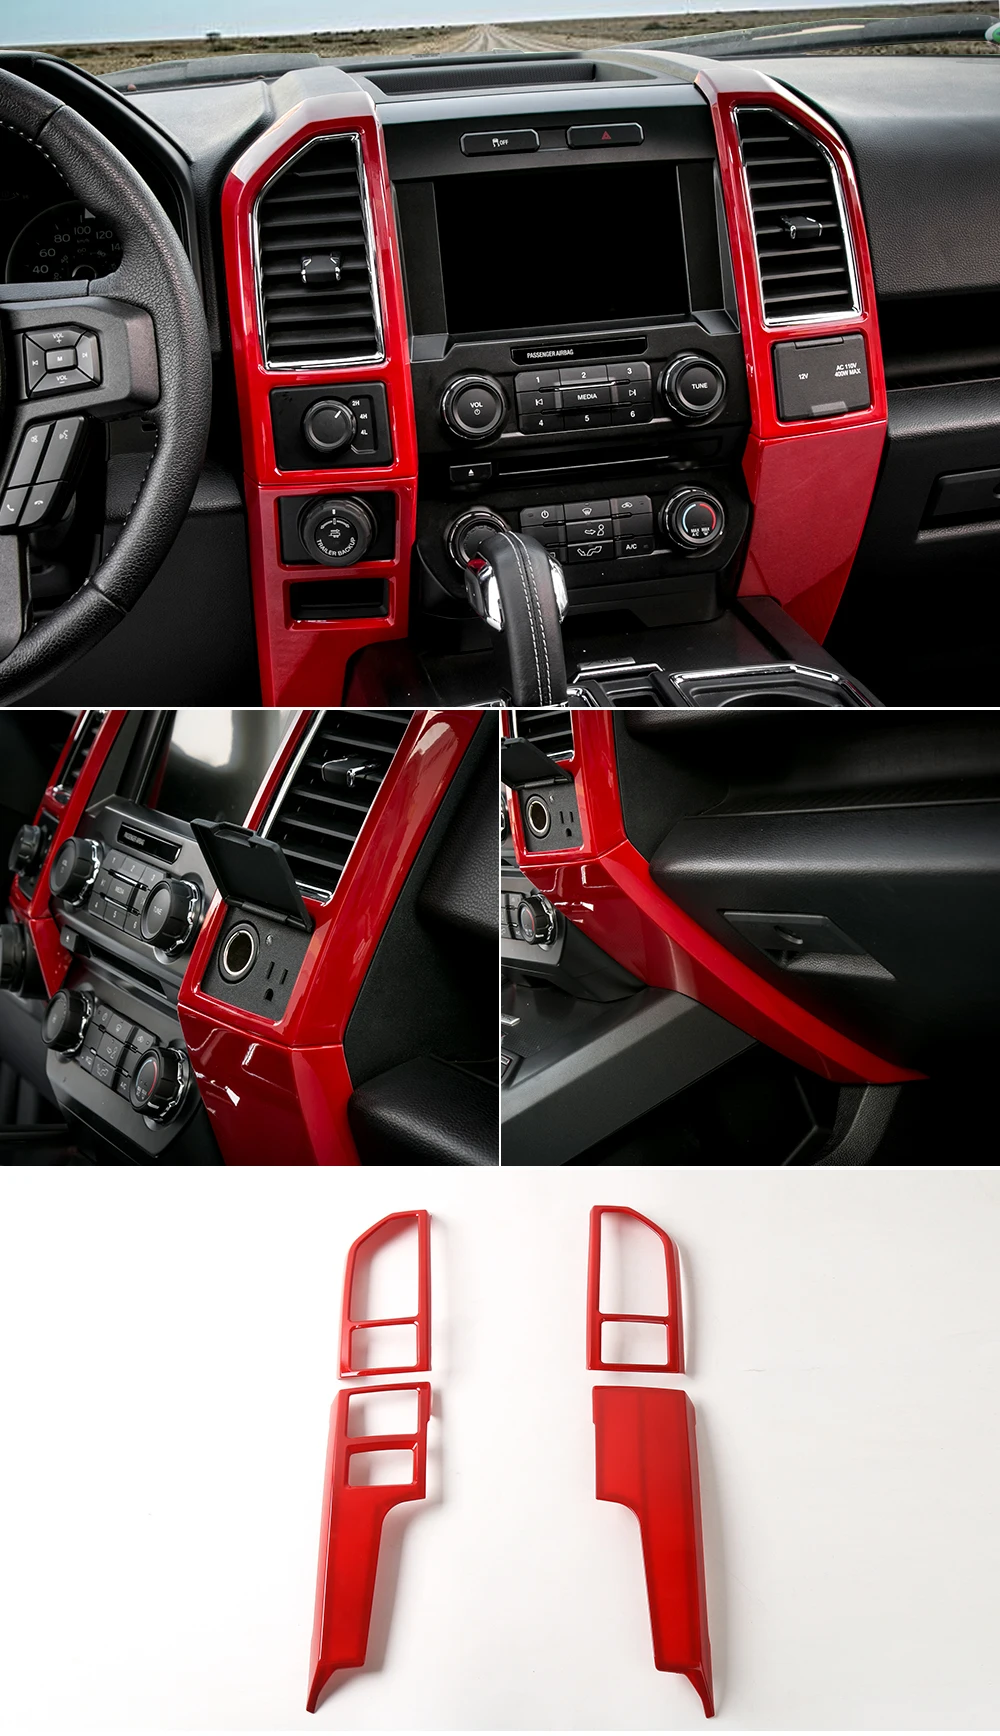 MOPAI ABS Автомобильная центральная консоль приборная панель вентиляционная панель декоративная крышка наклейки для Ford F150 Up автомобильные аксессуары